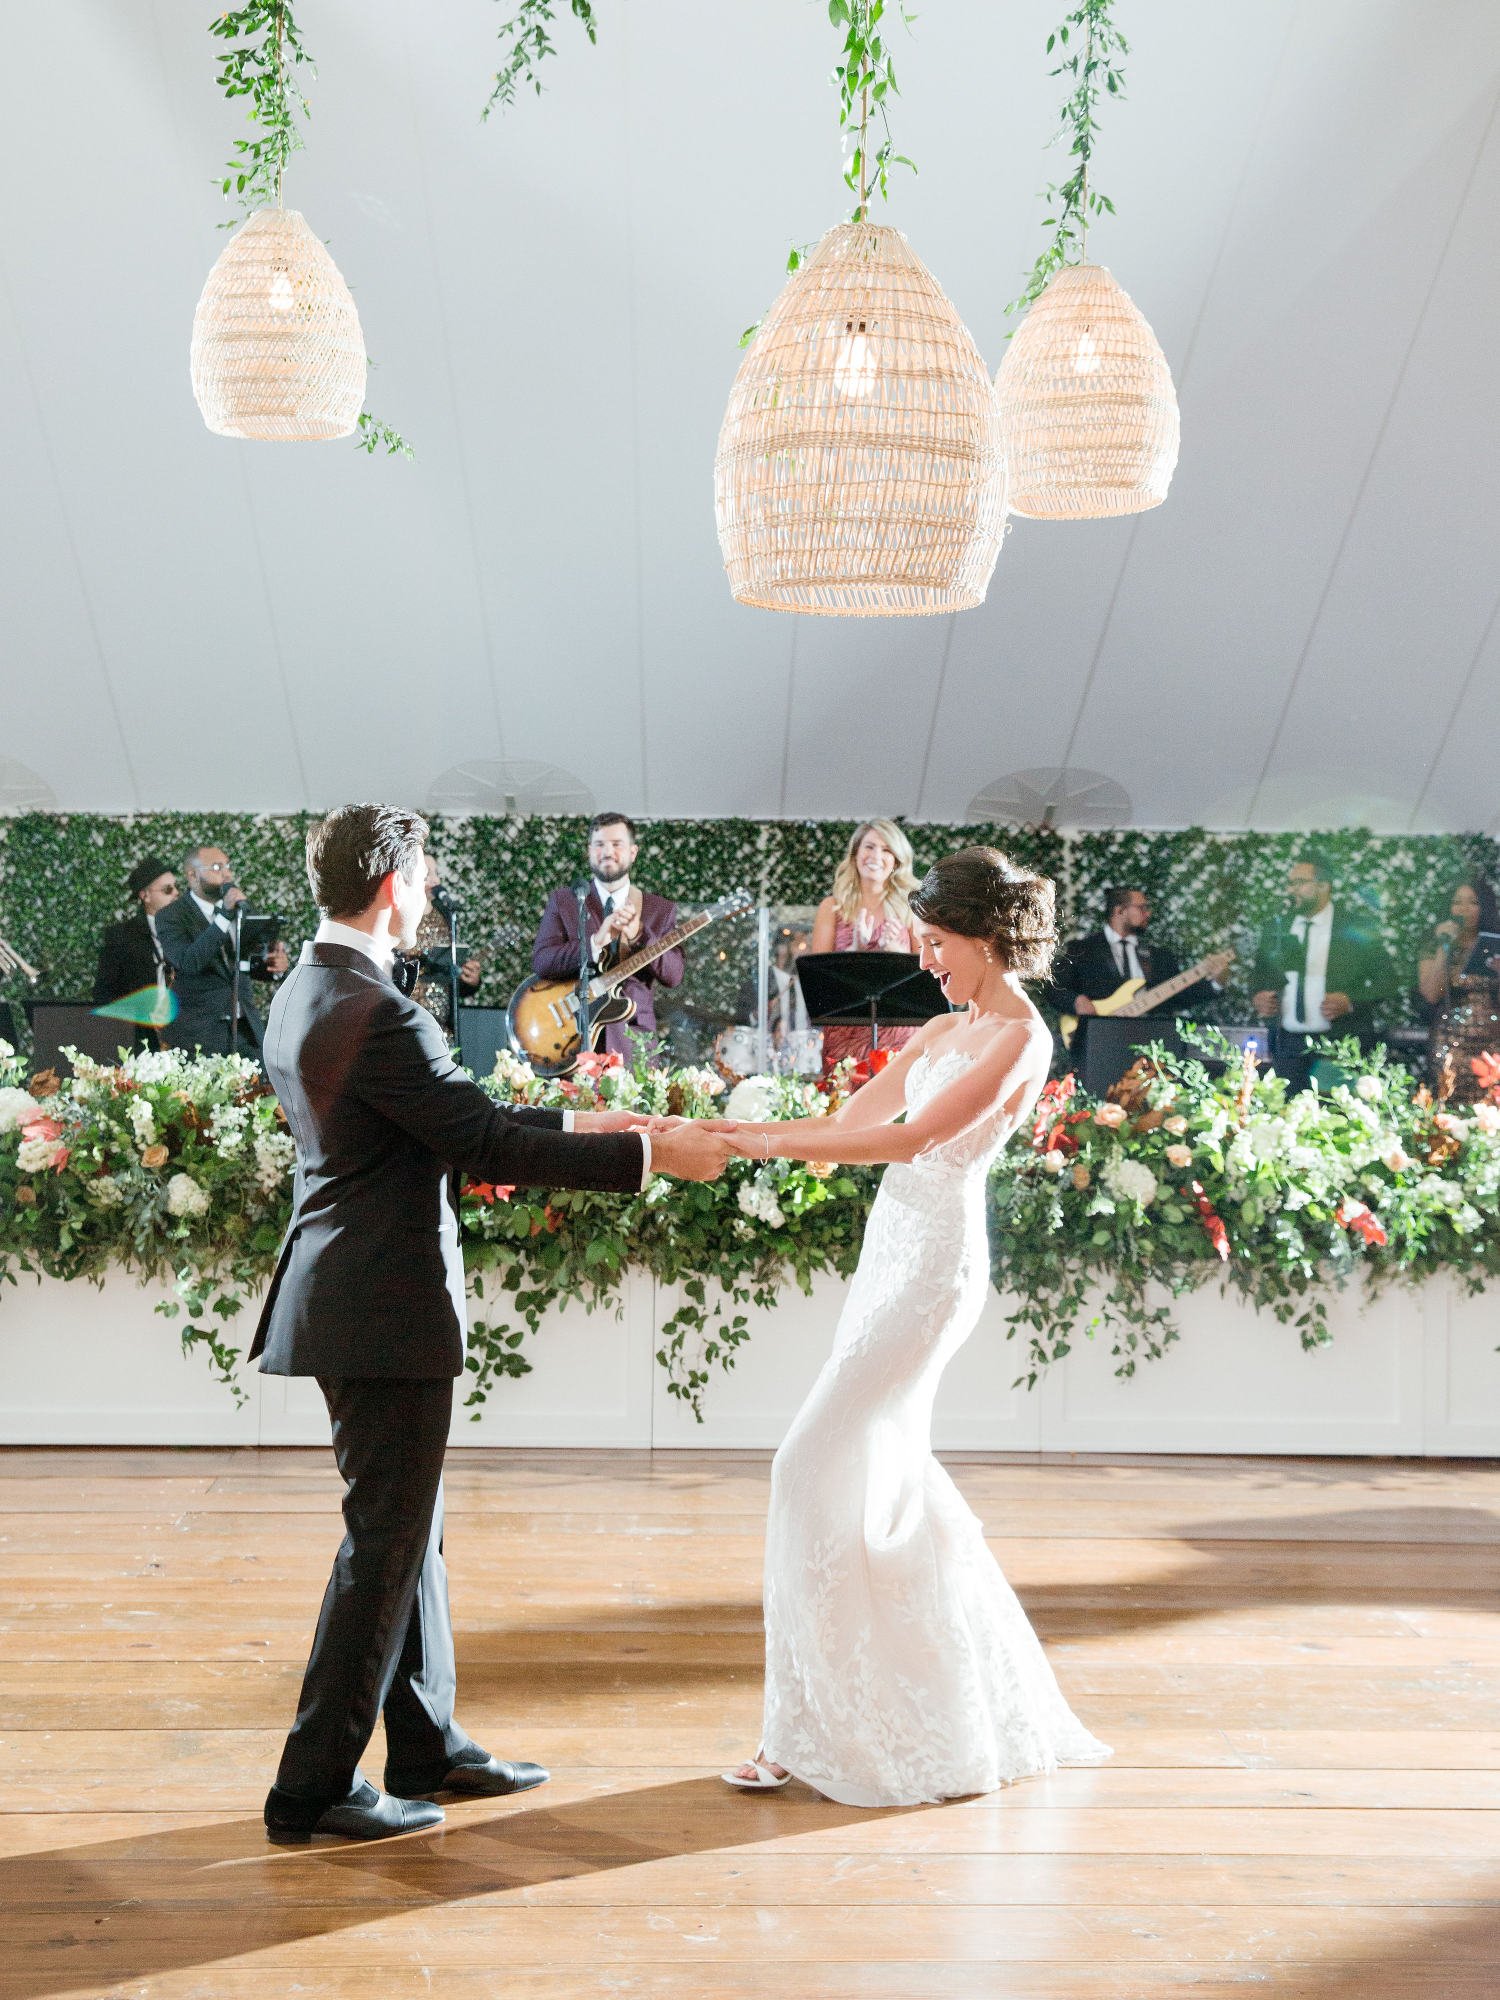 Bride-Groom-First-Dance-Tented-Wedding.jpg